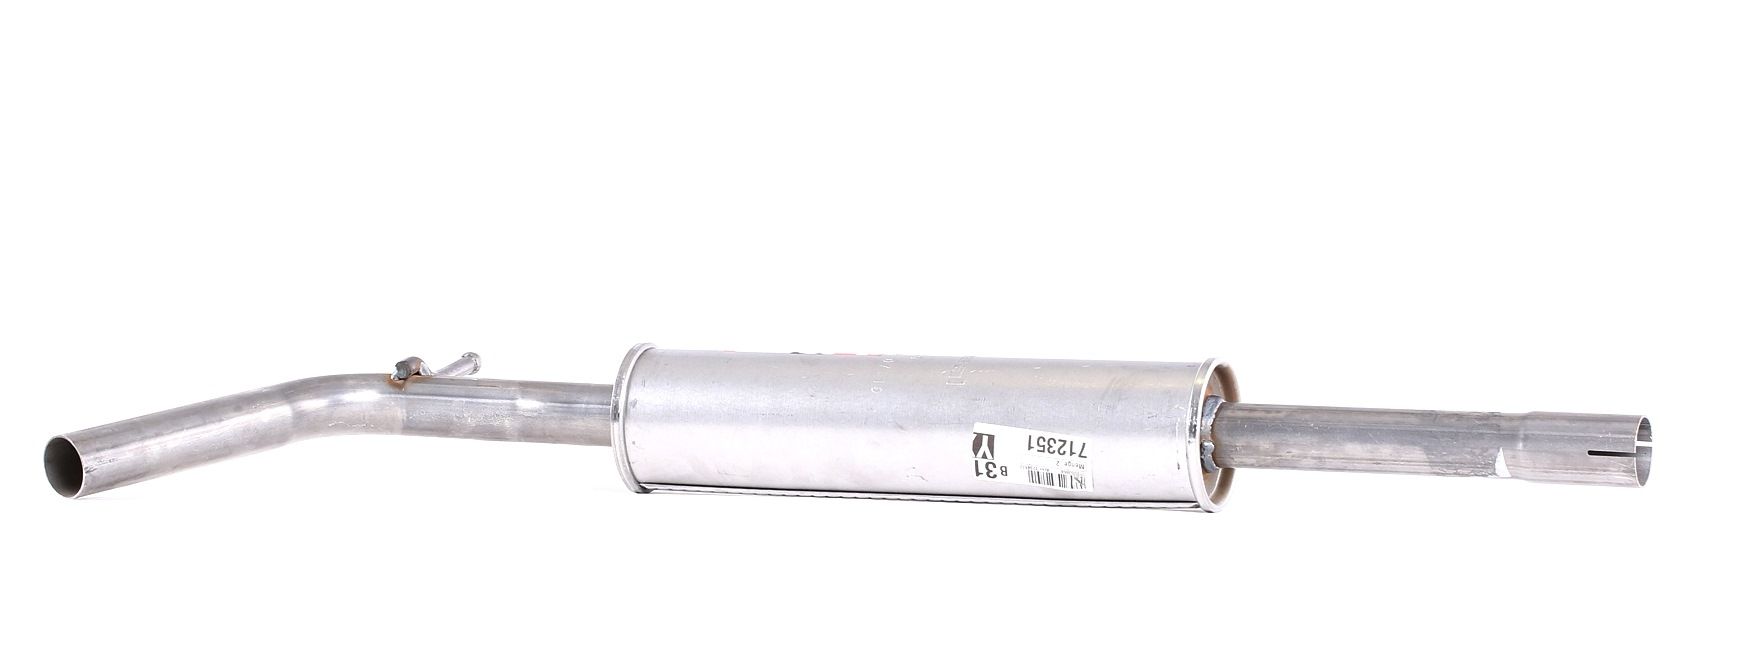 Bosal 282-039 Exhaust Silencer 